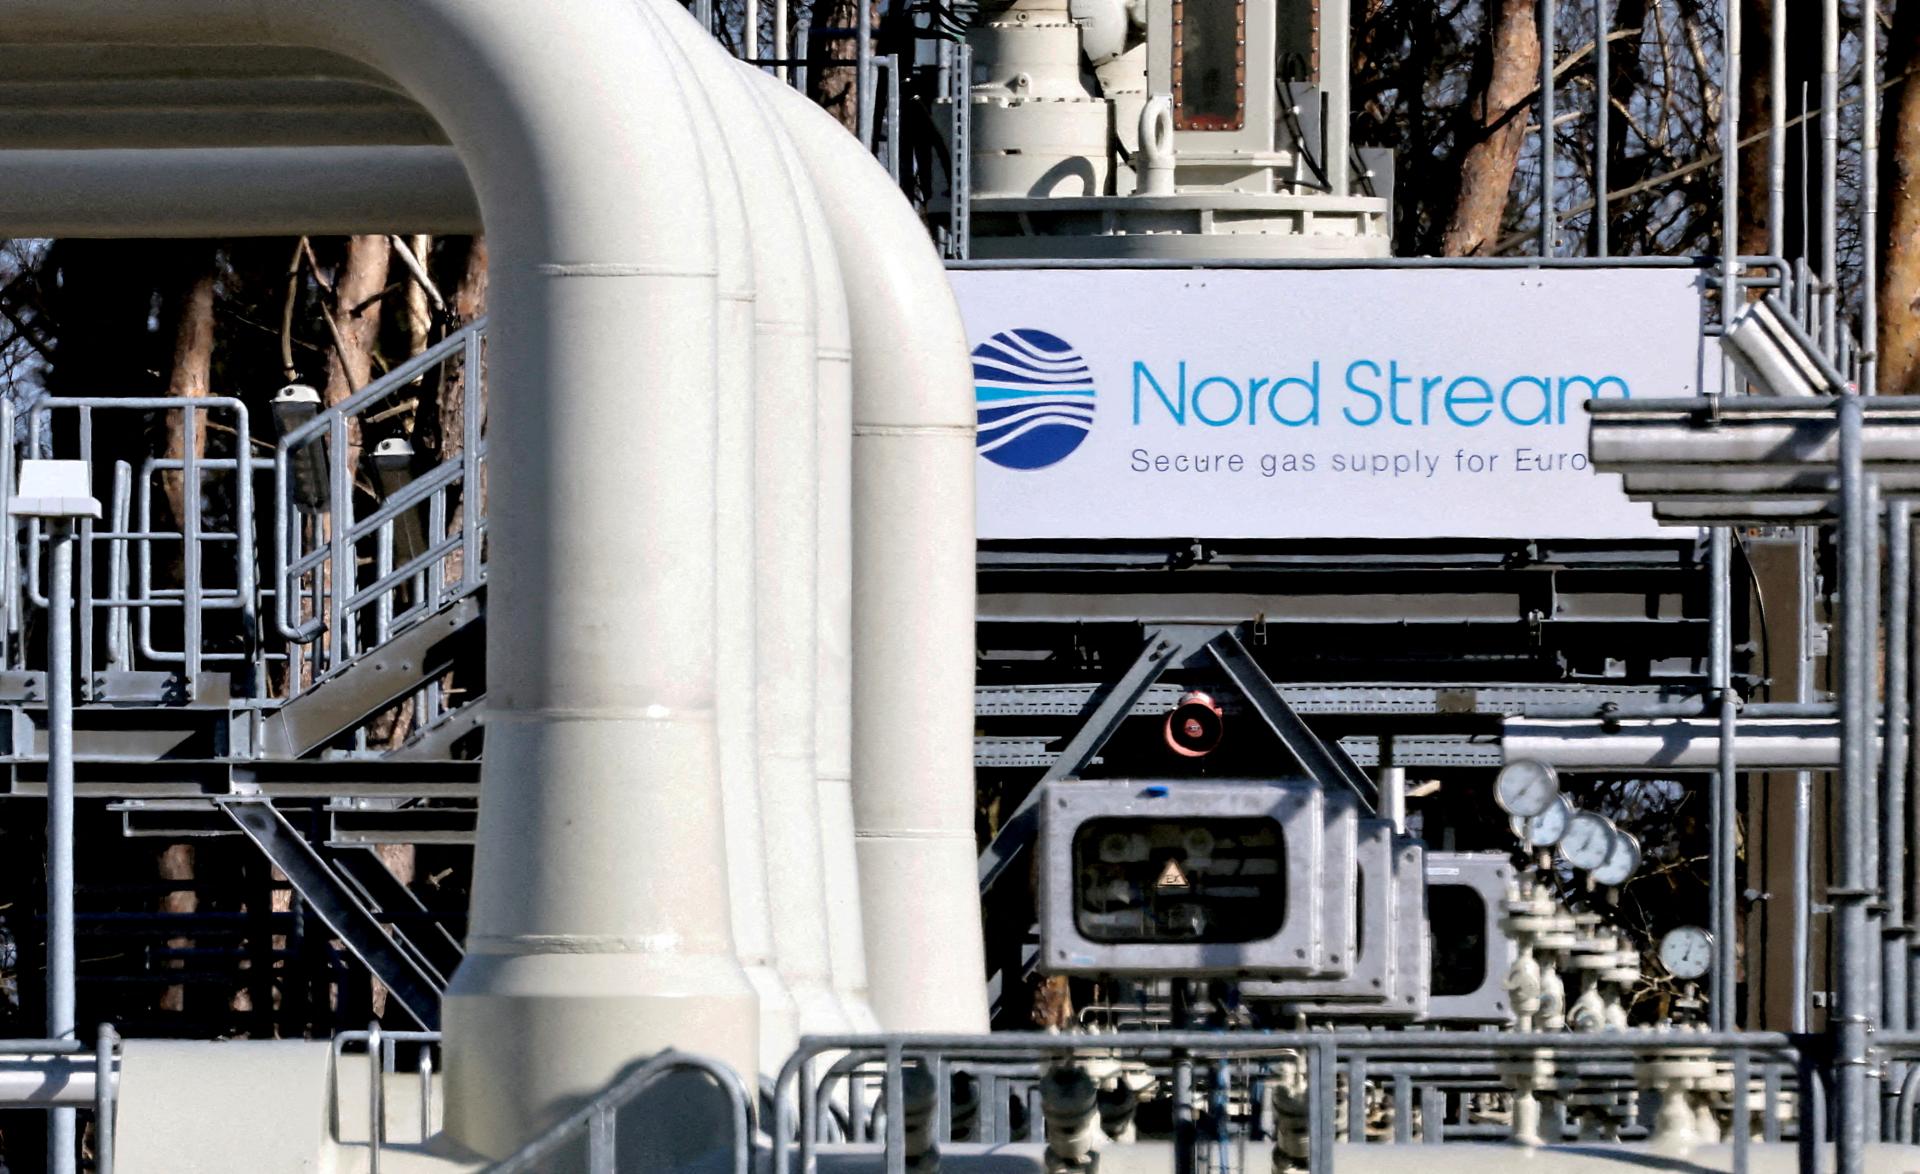 Rusko má v sobotu obnoviť dodávky cez plynovod Nord Stream 1, odstávky budú každých 42 dní